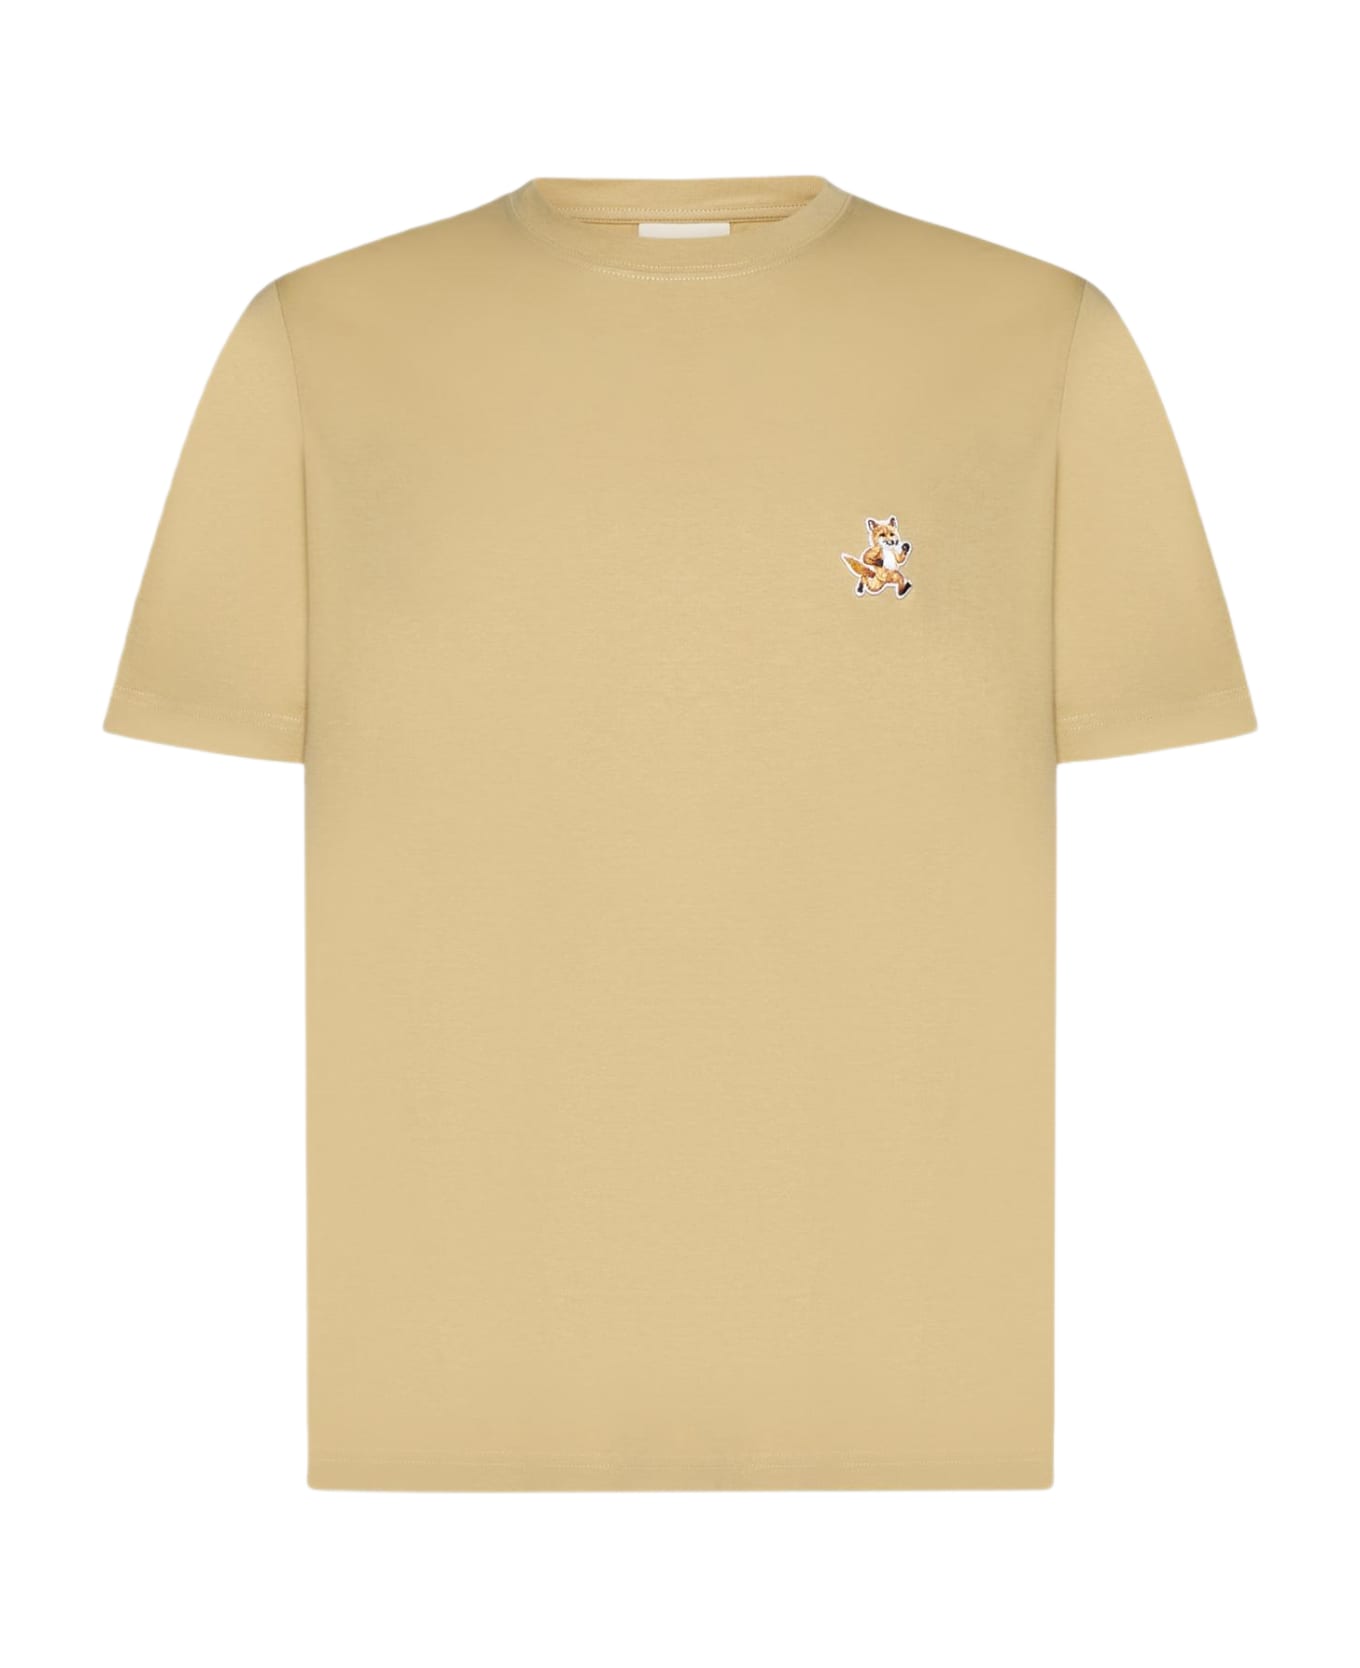 Maison Kitsuné Speedy Fox Patch Cotton T-shirt - Beige